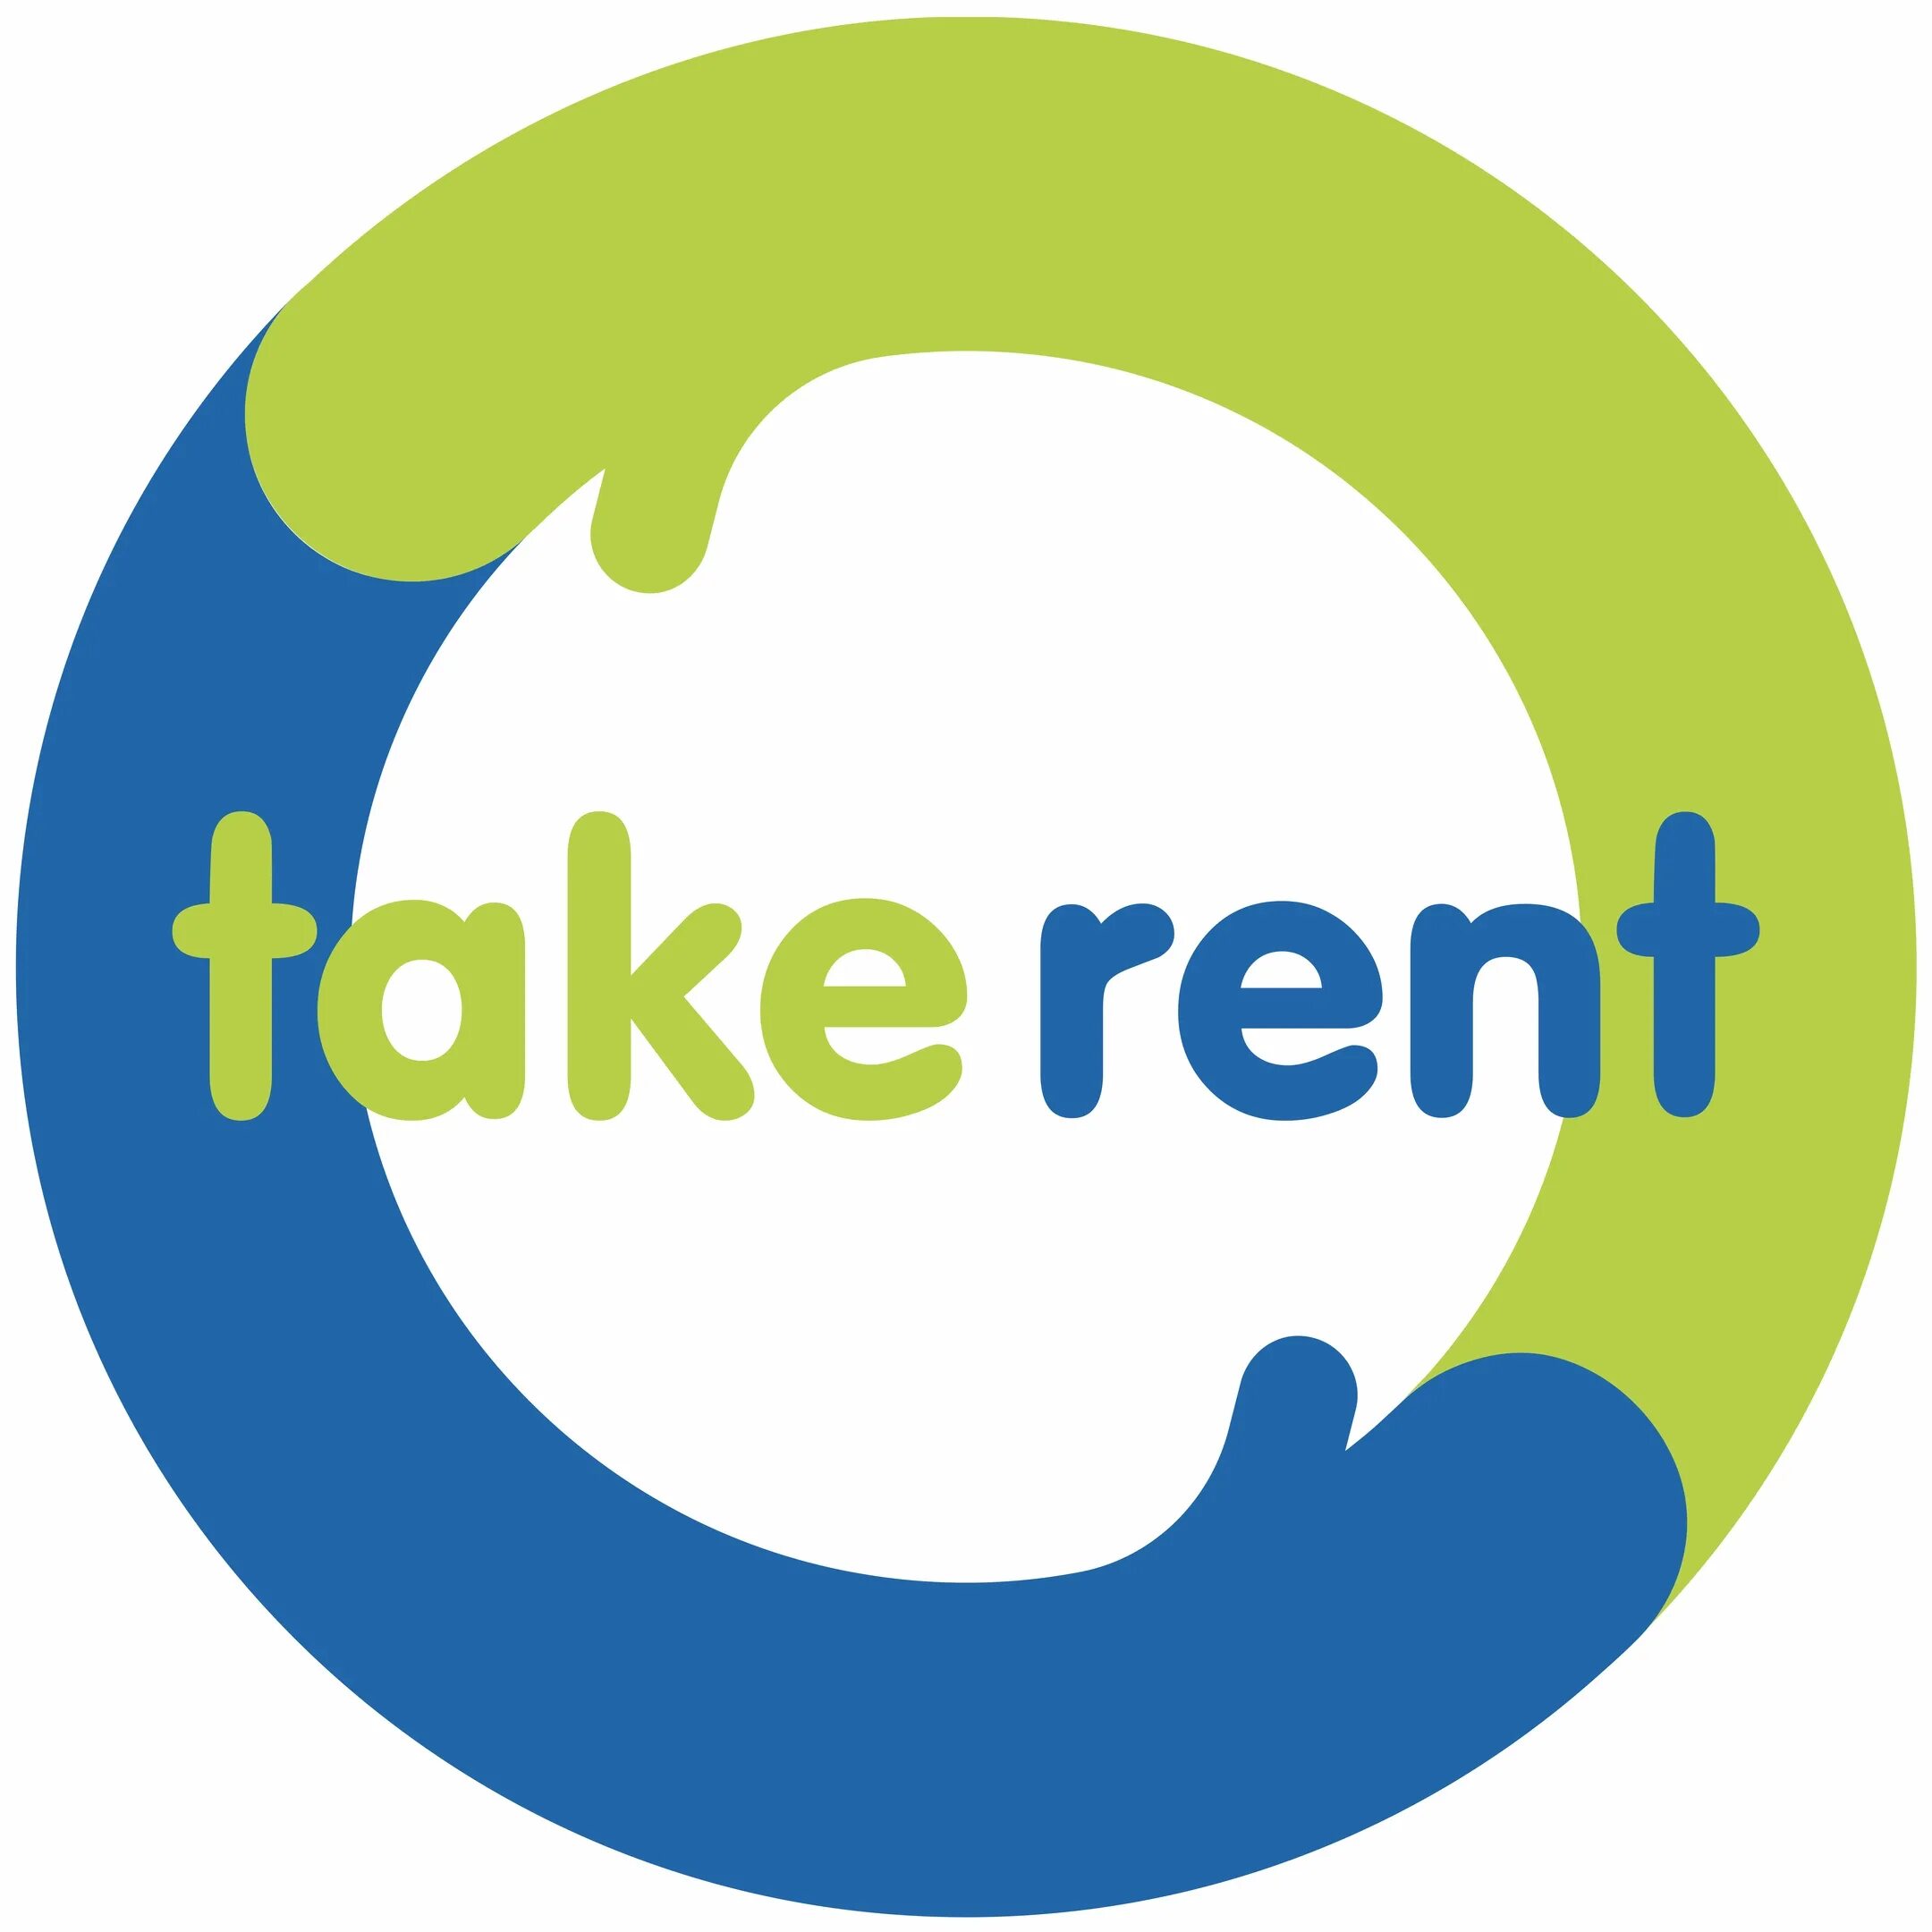 Take rent